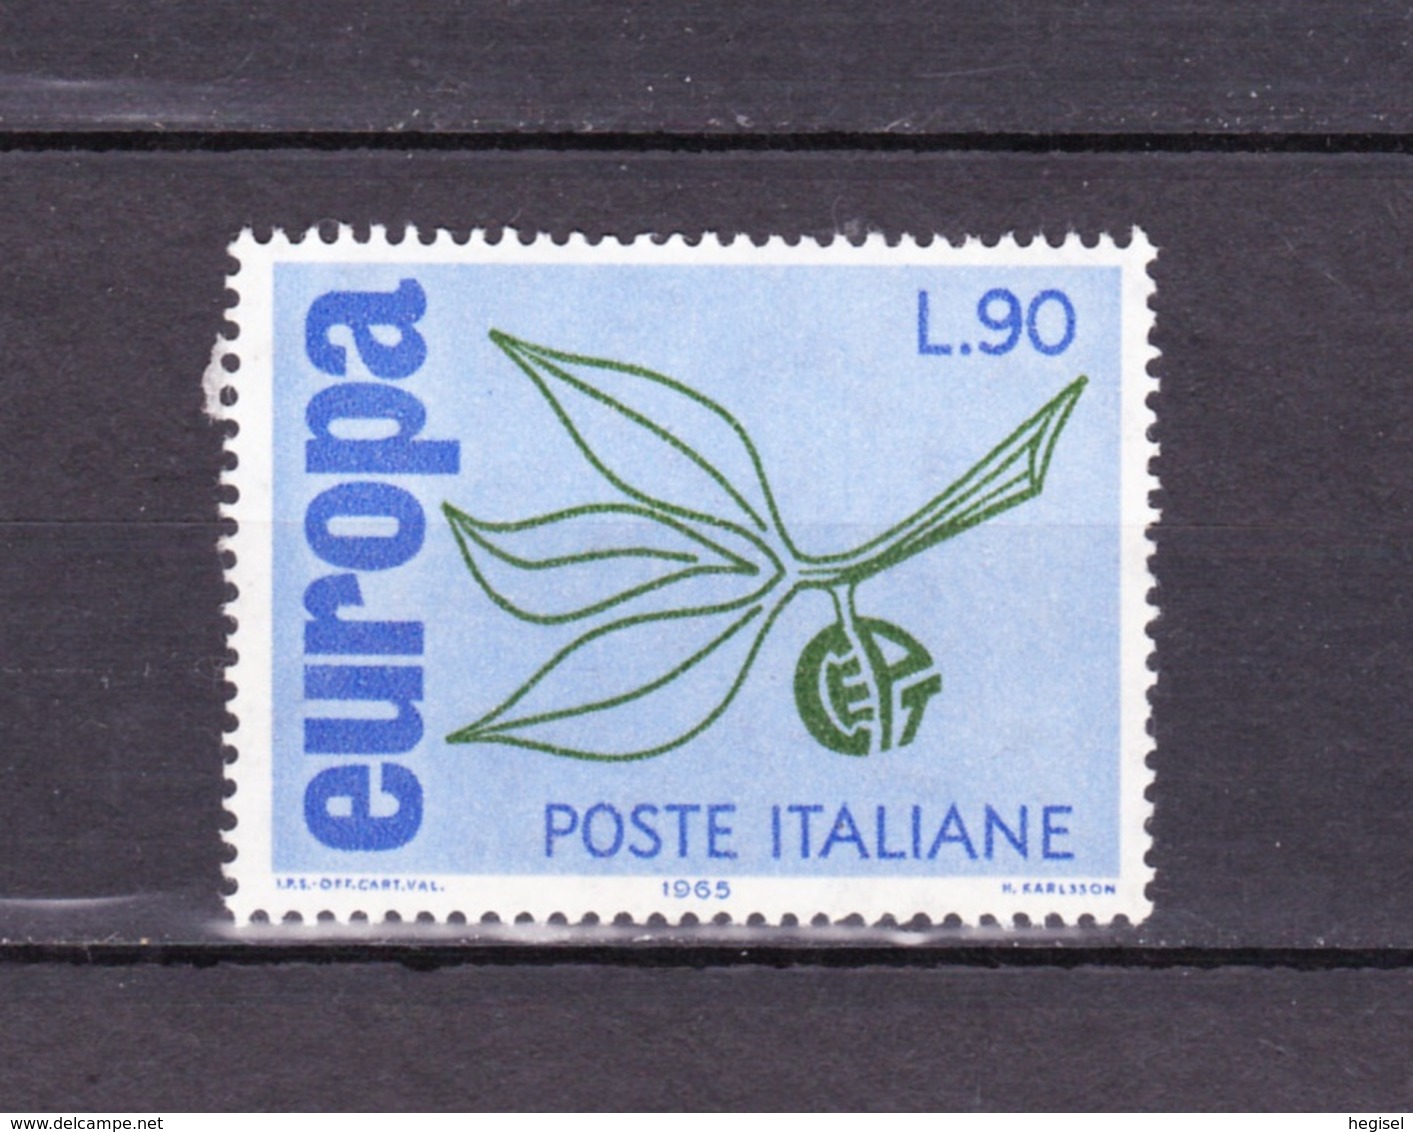 1965 Italien, CEPT, Postfrisch - 1965